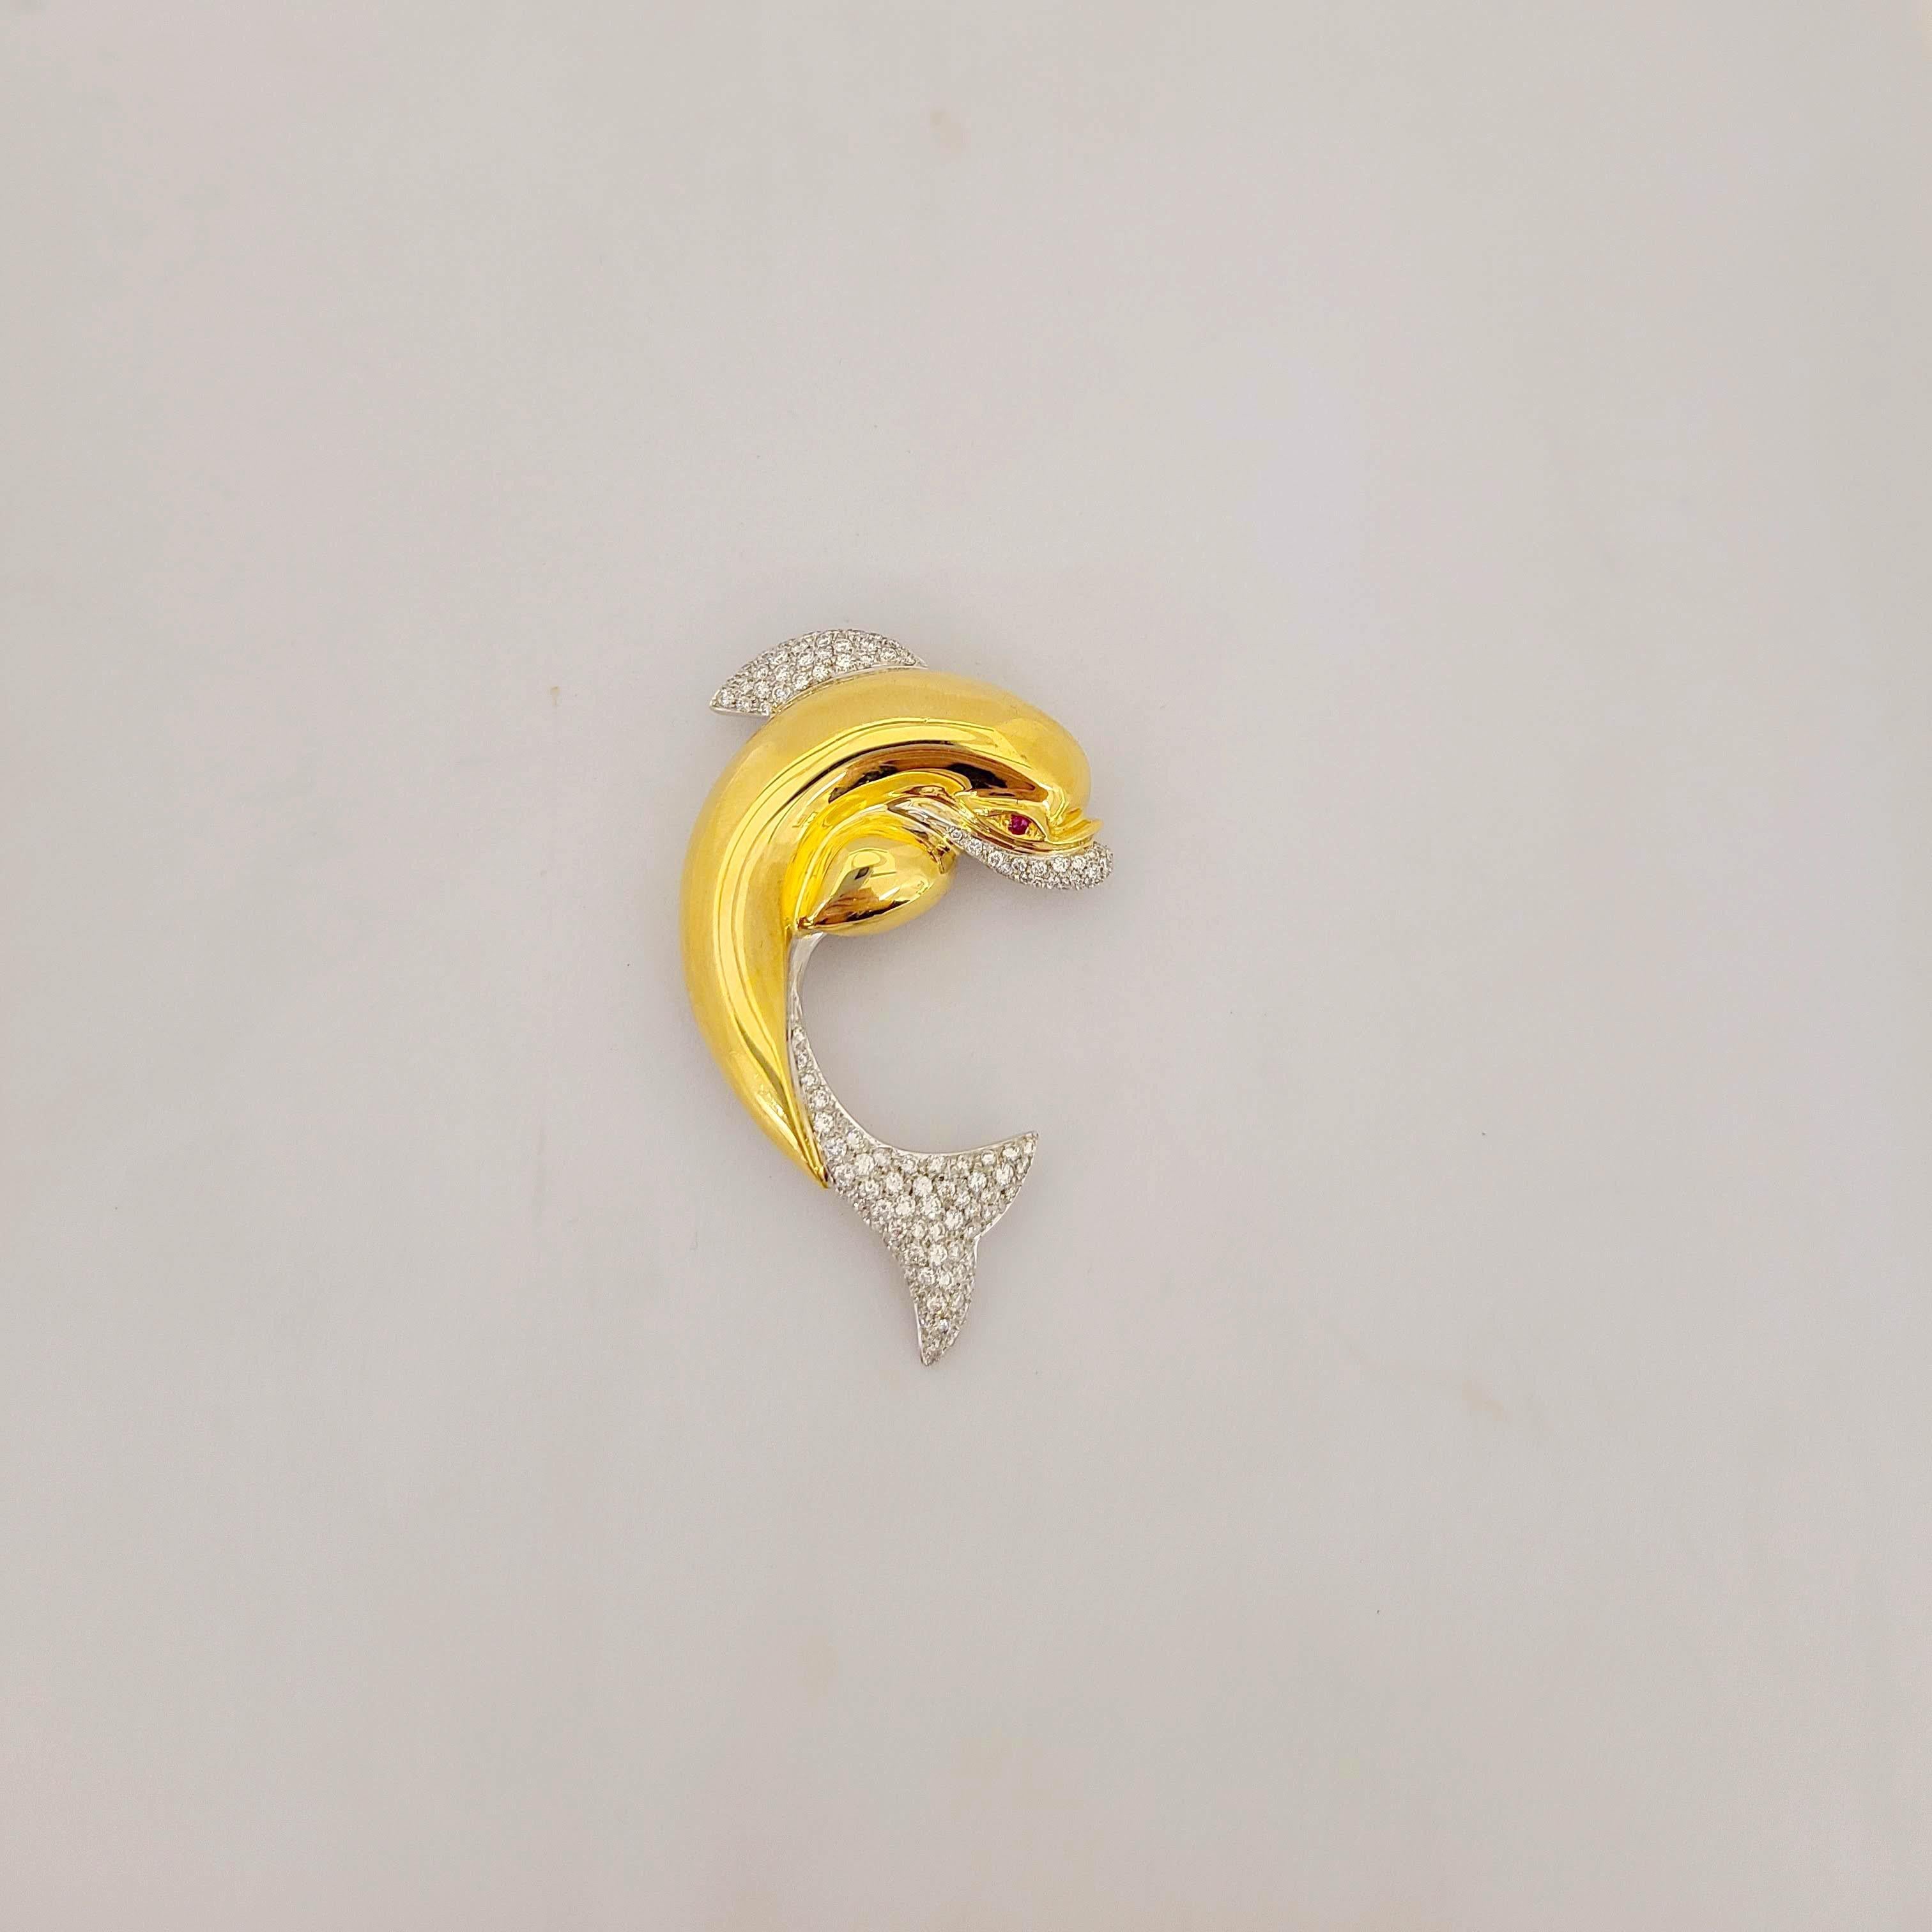 Broche dauphin Cellini en or jaune 18 carats. Conçu dans un or jaune très poli, magnifiquement serti de diamants pavés dans la queue, la nageoire et la bouche. Un rubis taillé en brillant est serti pour l'œil. Le dauphin mesure 2